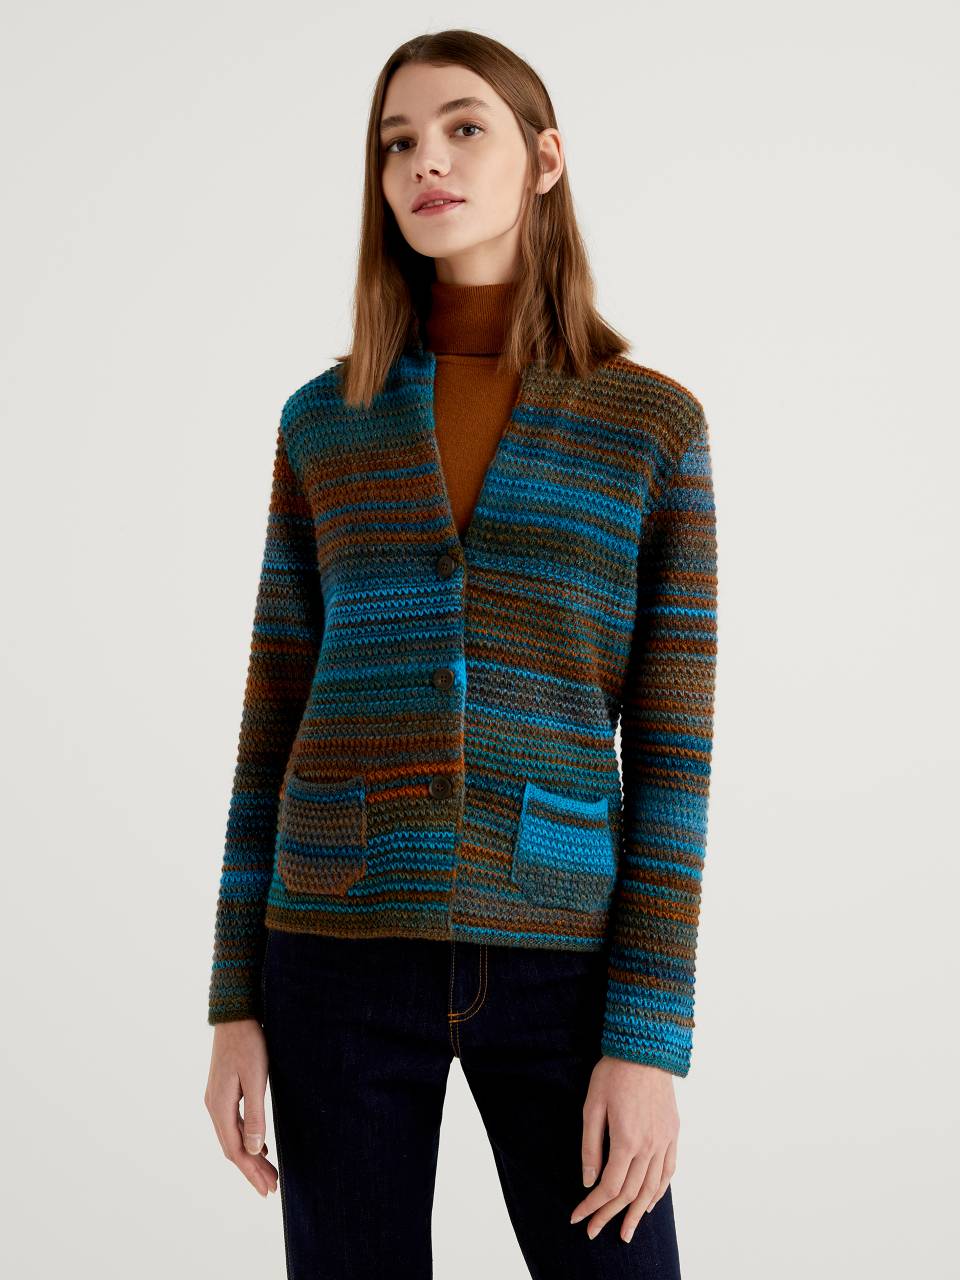 Benetton Knit jacket in multicolor wool blend. 1